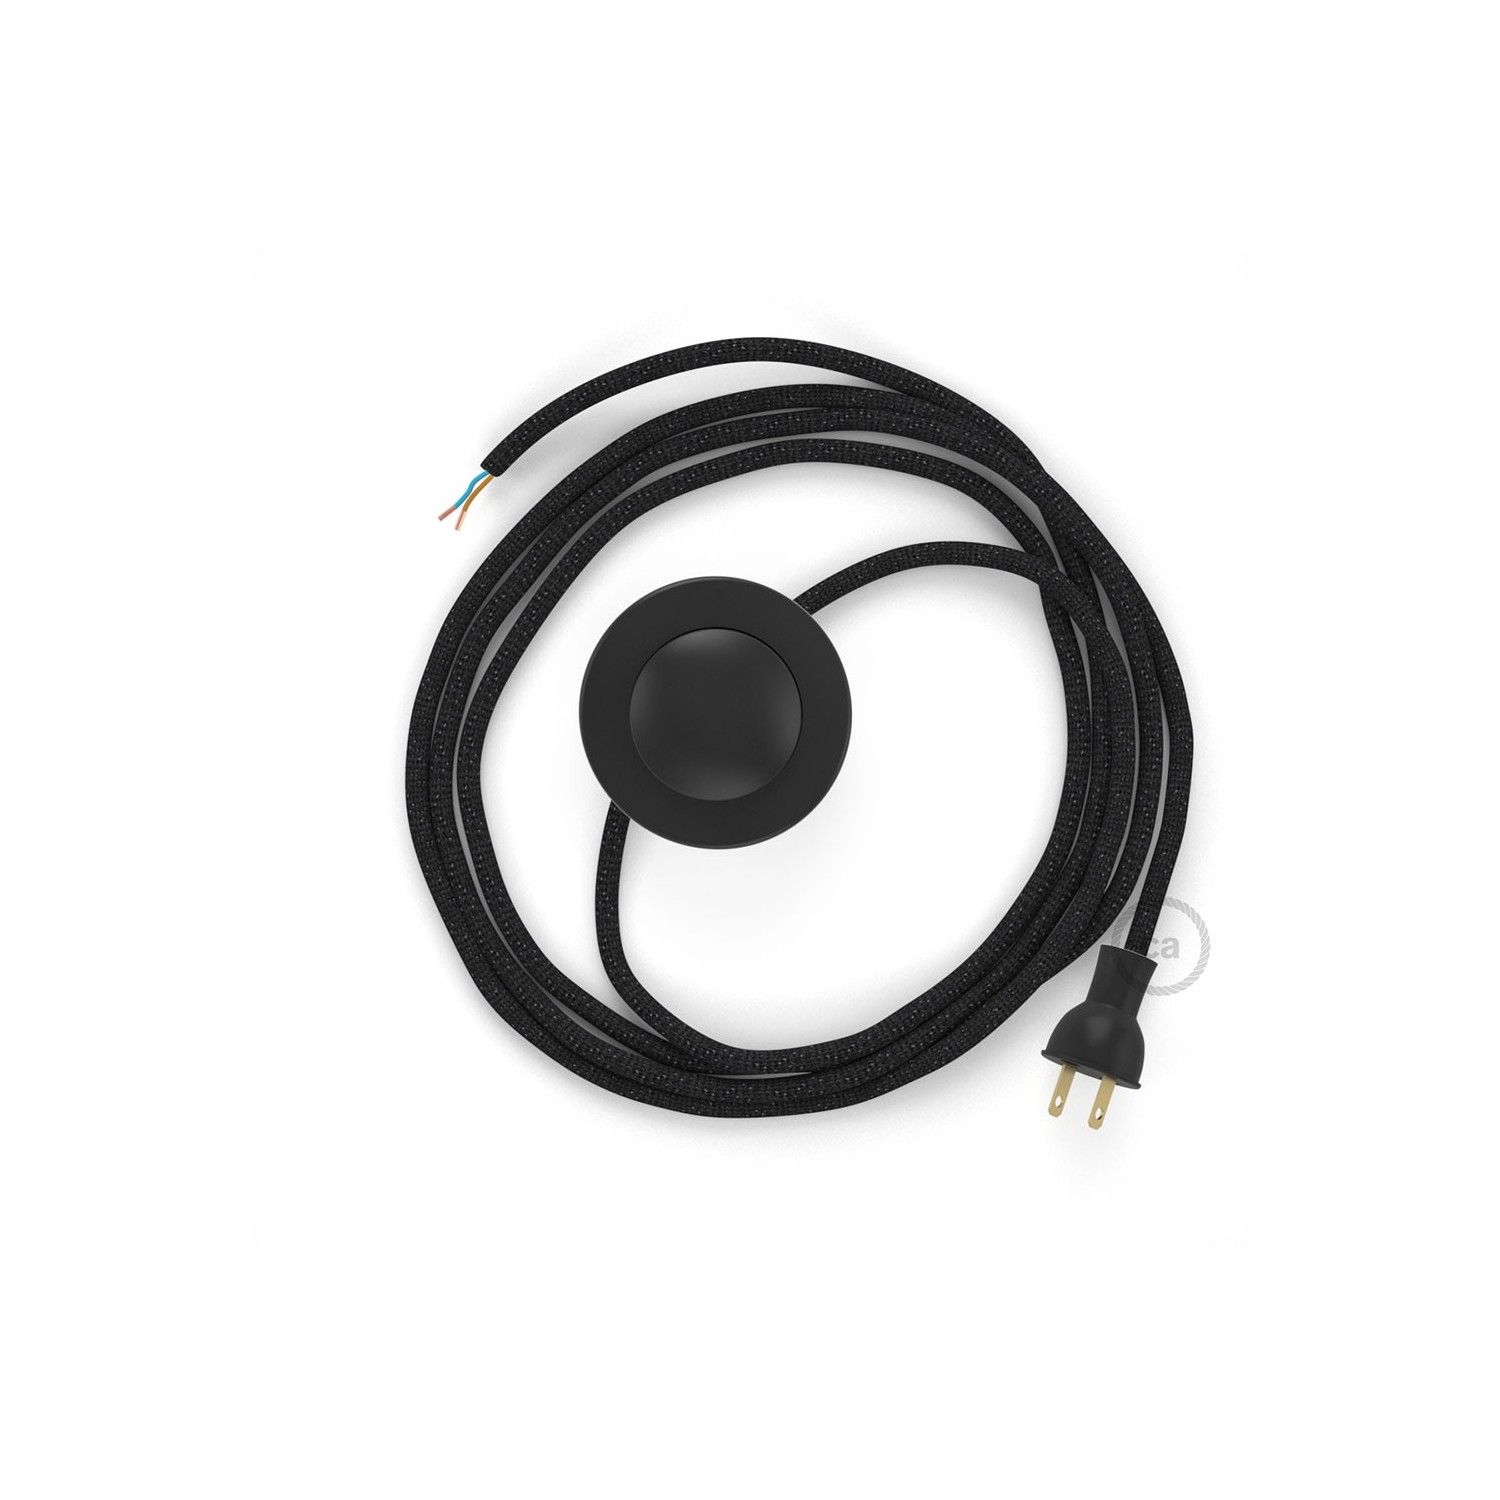 Cableado para lámpara de piso, cable RL04 Rayón Brillante Negro 3 m. Elige tu el color de la clavija y del interruptor!